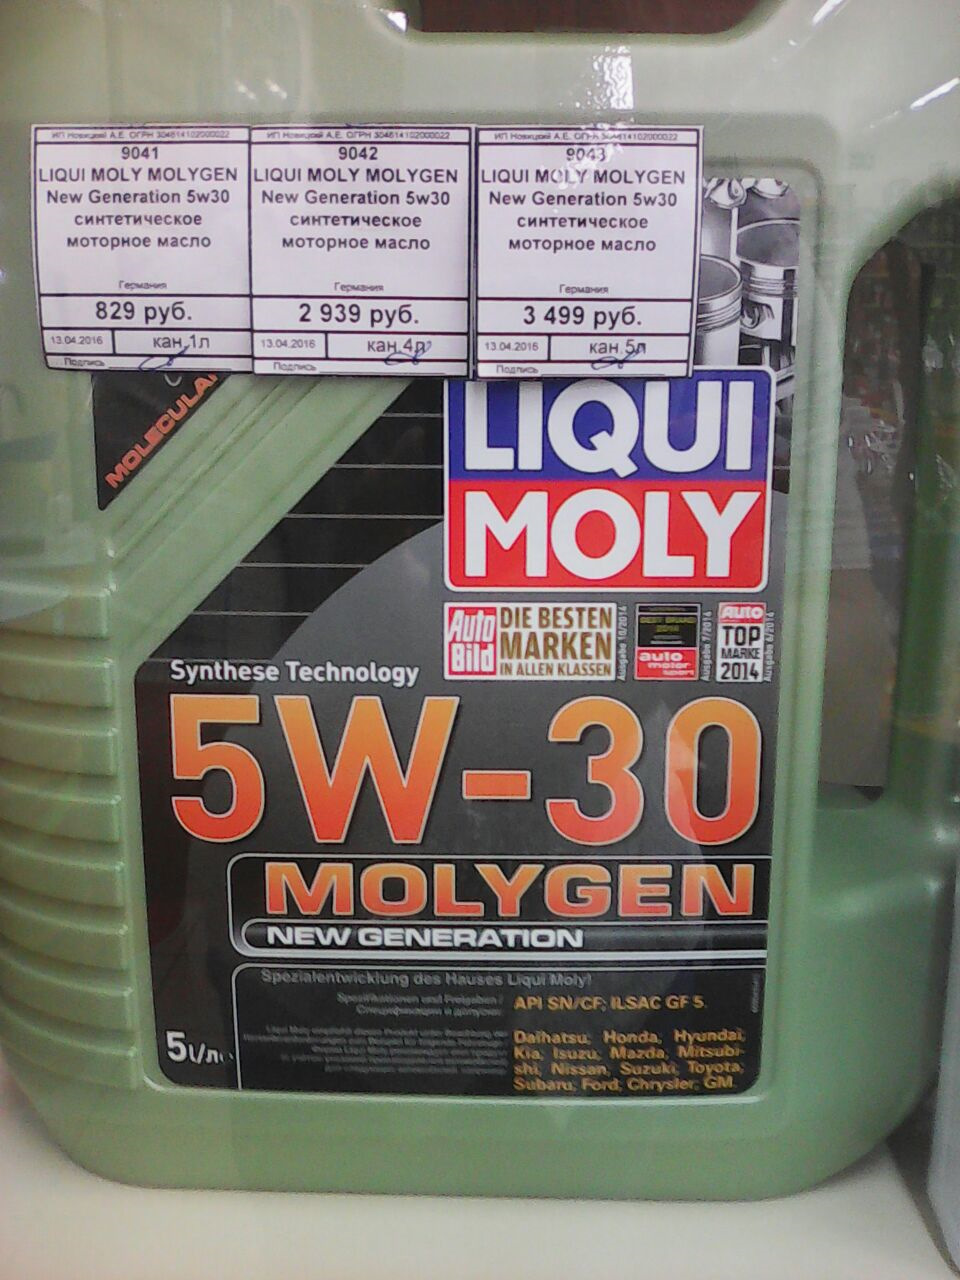 Подлинность масла ликви моли. Liqui Moly 9043 масло моторное. 9041 Liqui Moly Molygen HC 5w30 1 л. Liqui Moly Molygen New Generation 5w-30 цвет. Liqui Moly Molygen New Generation 5w-30 допуски.